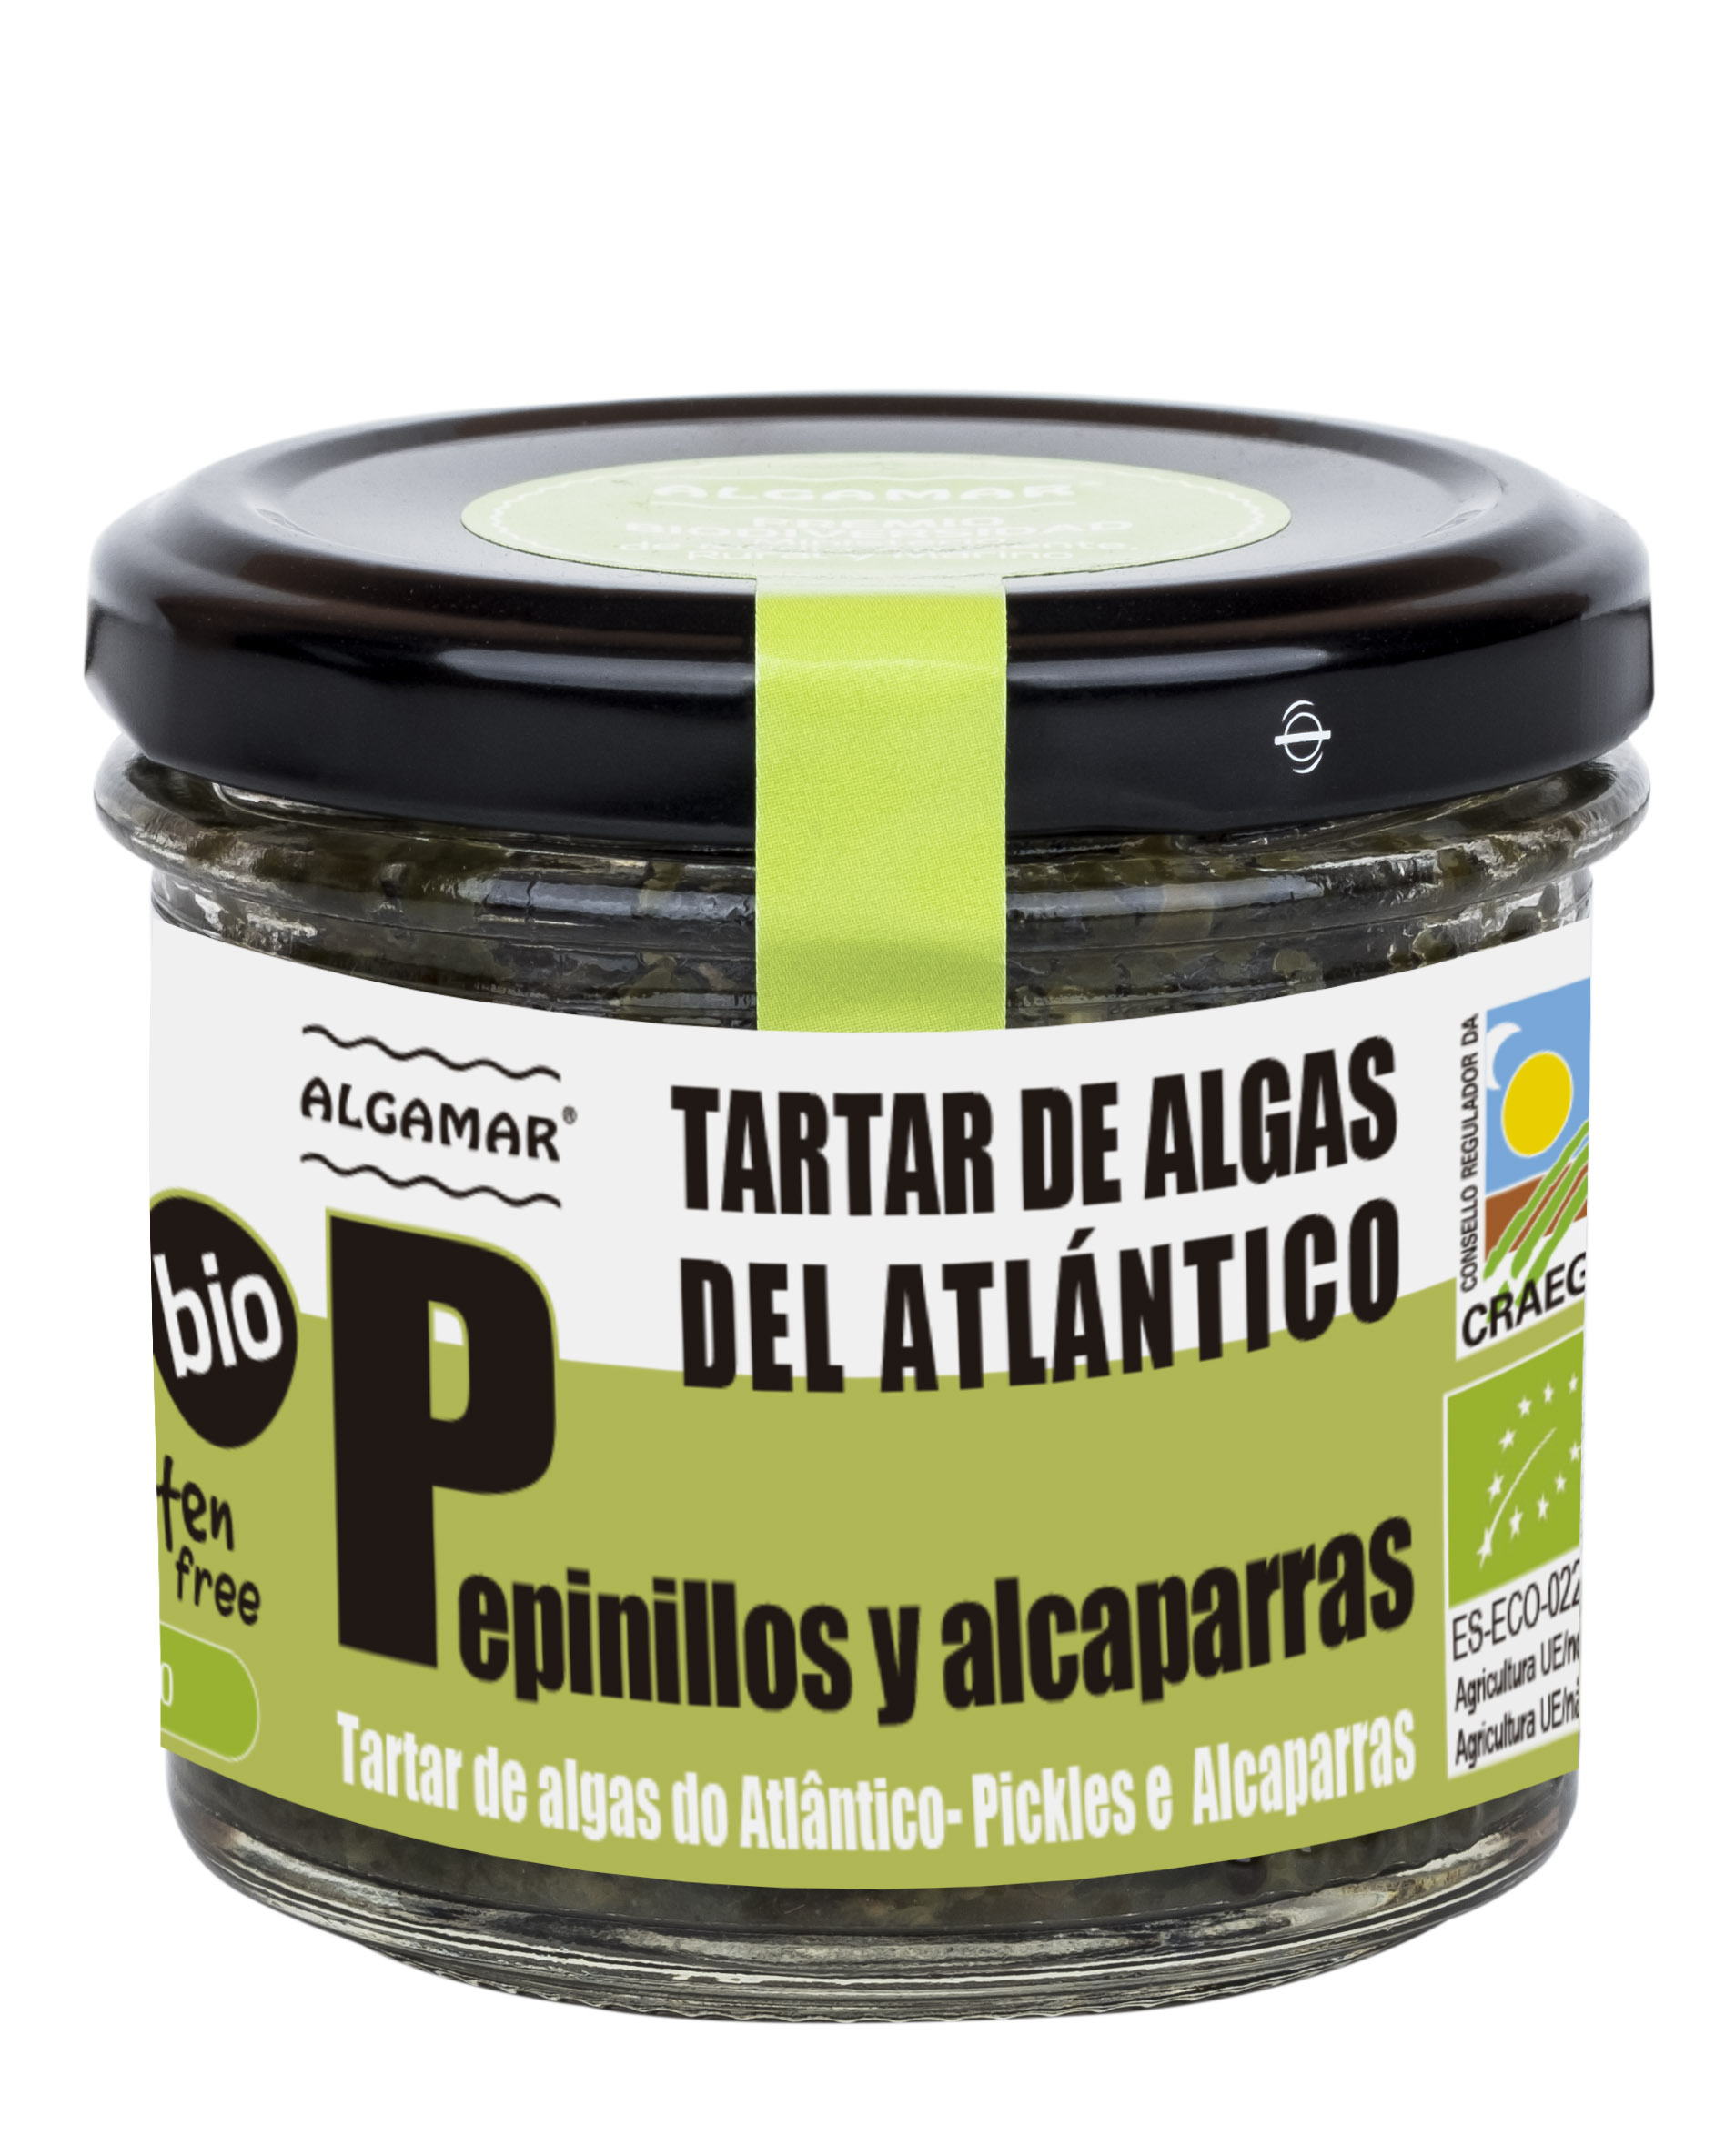 Tártaro de Algas_Pickles_Alcaparras